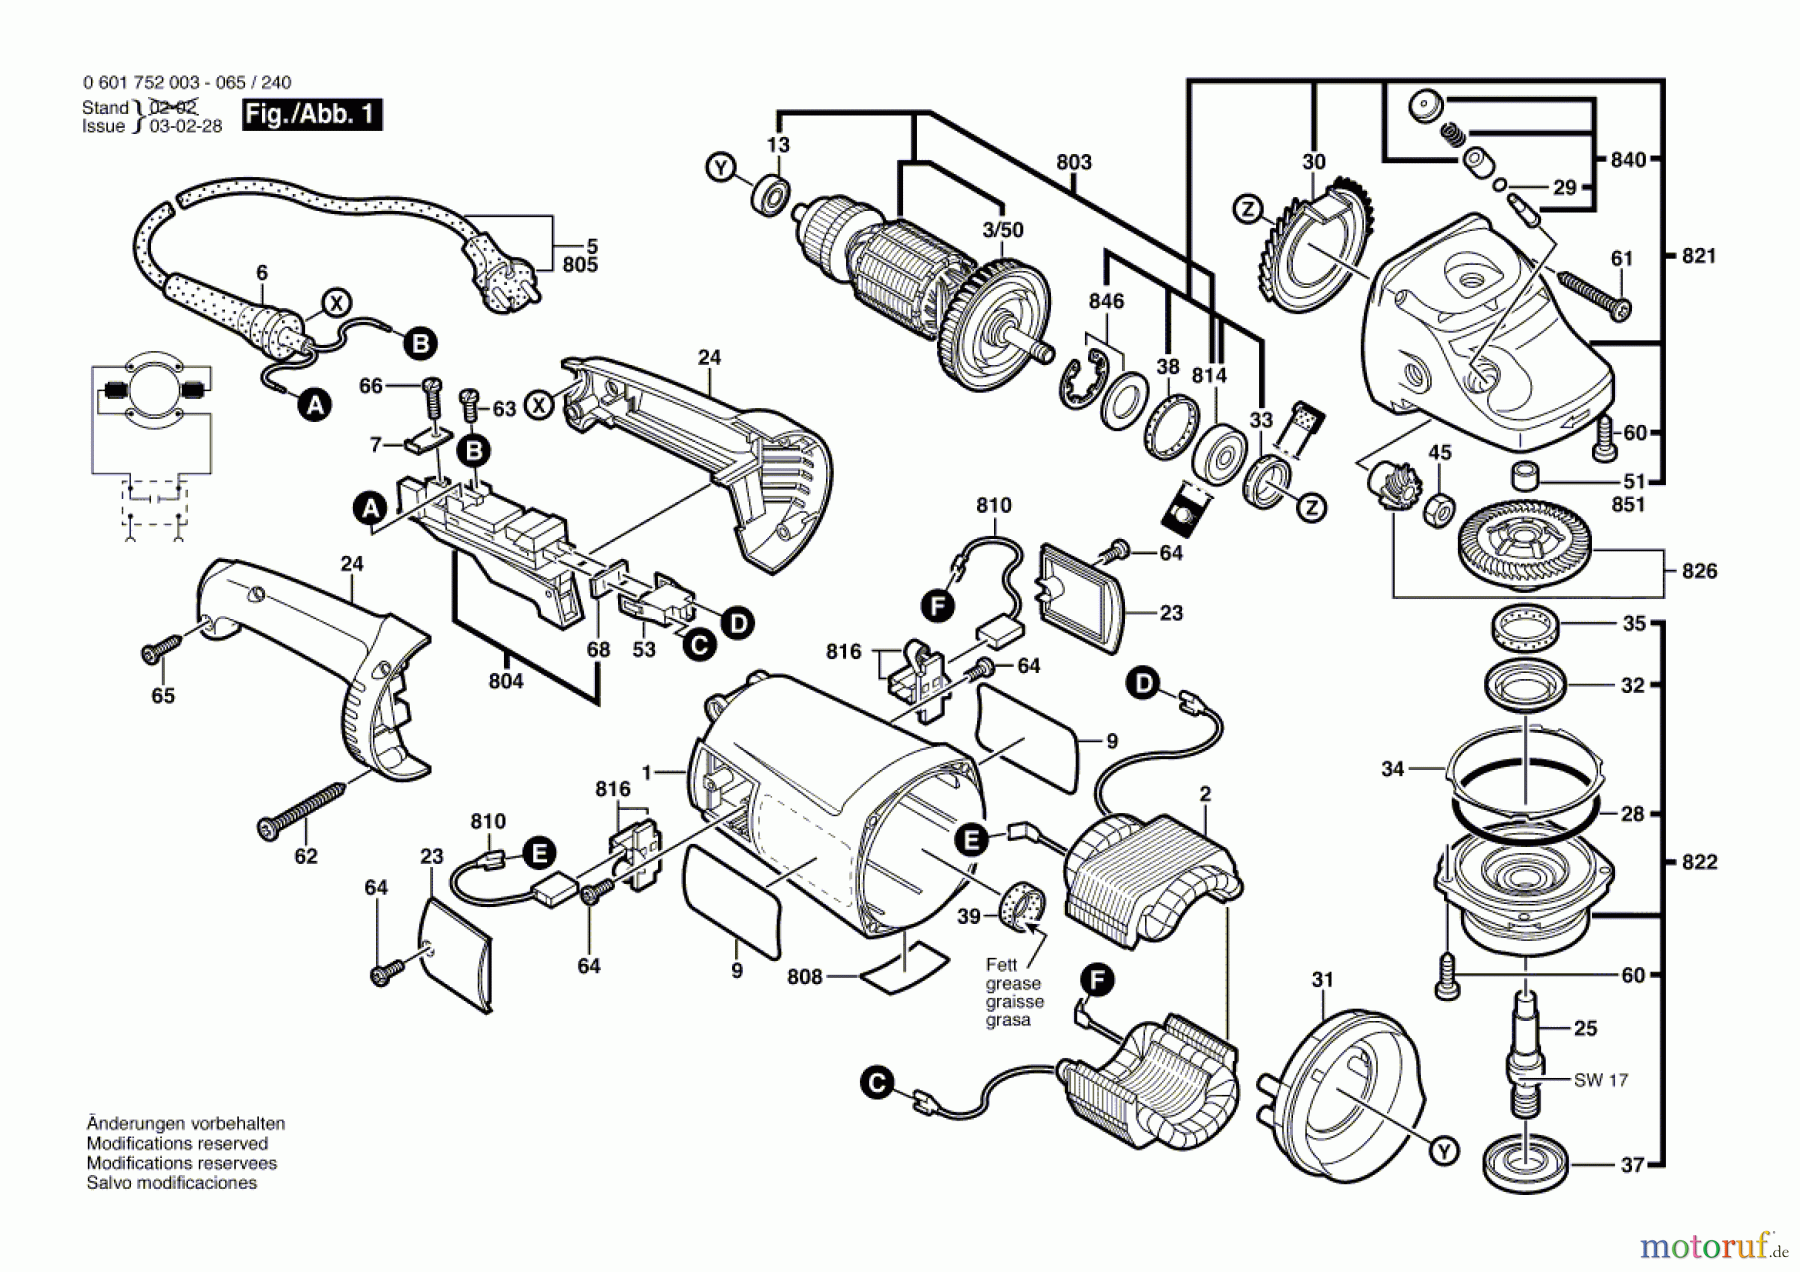  Bosch Werkzeug Winkelschleifer GWS 20-230 Seite 1